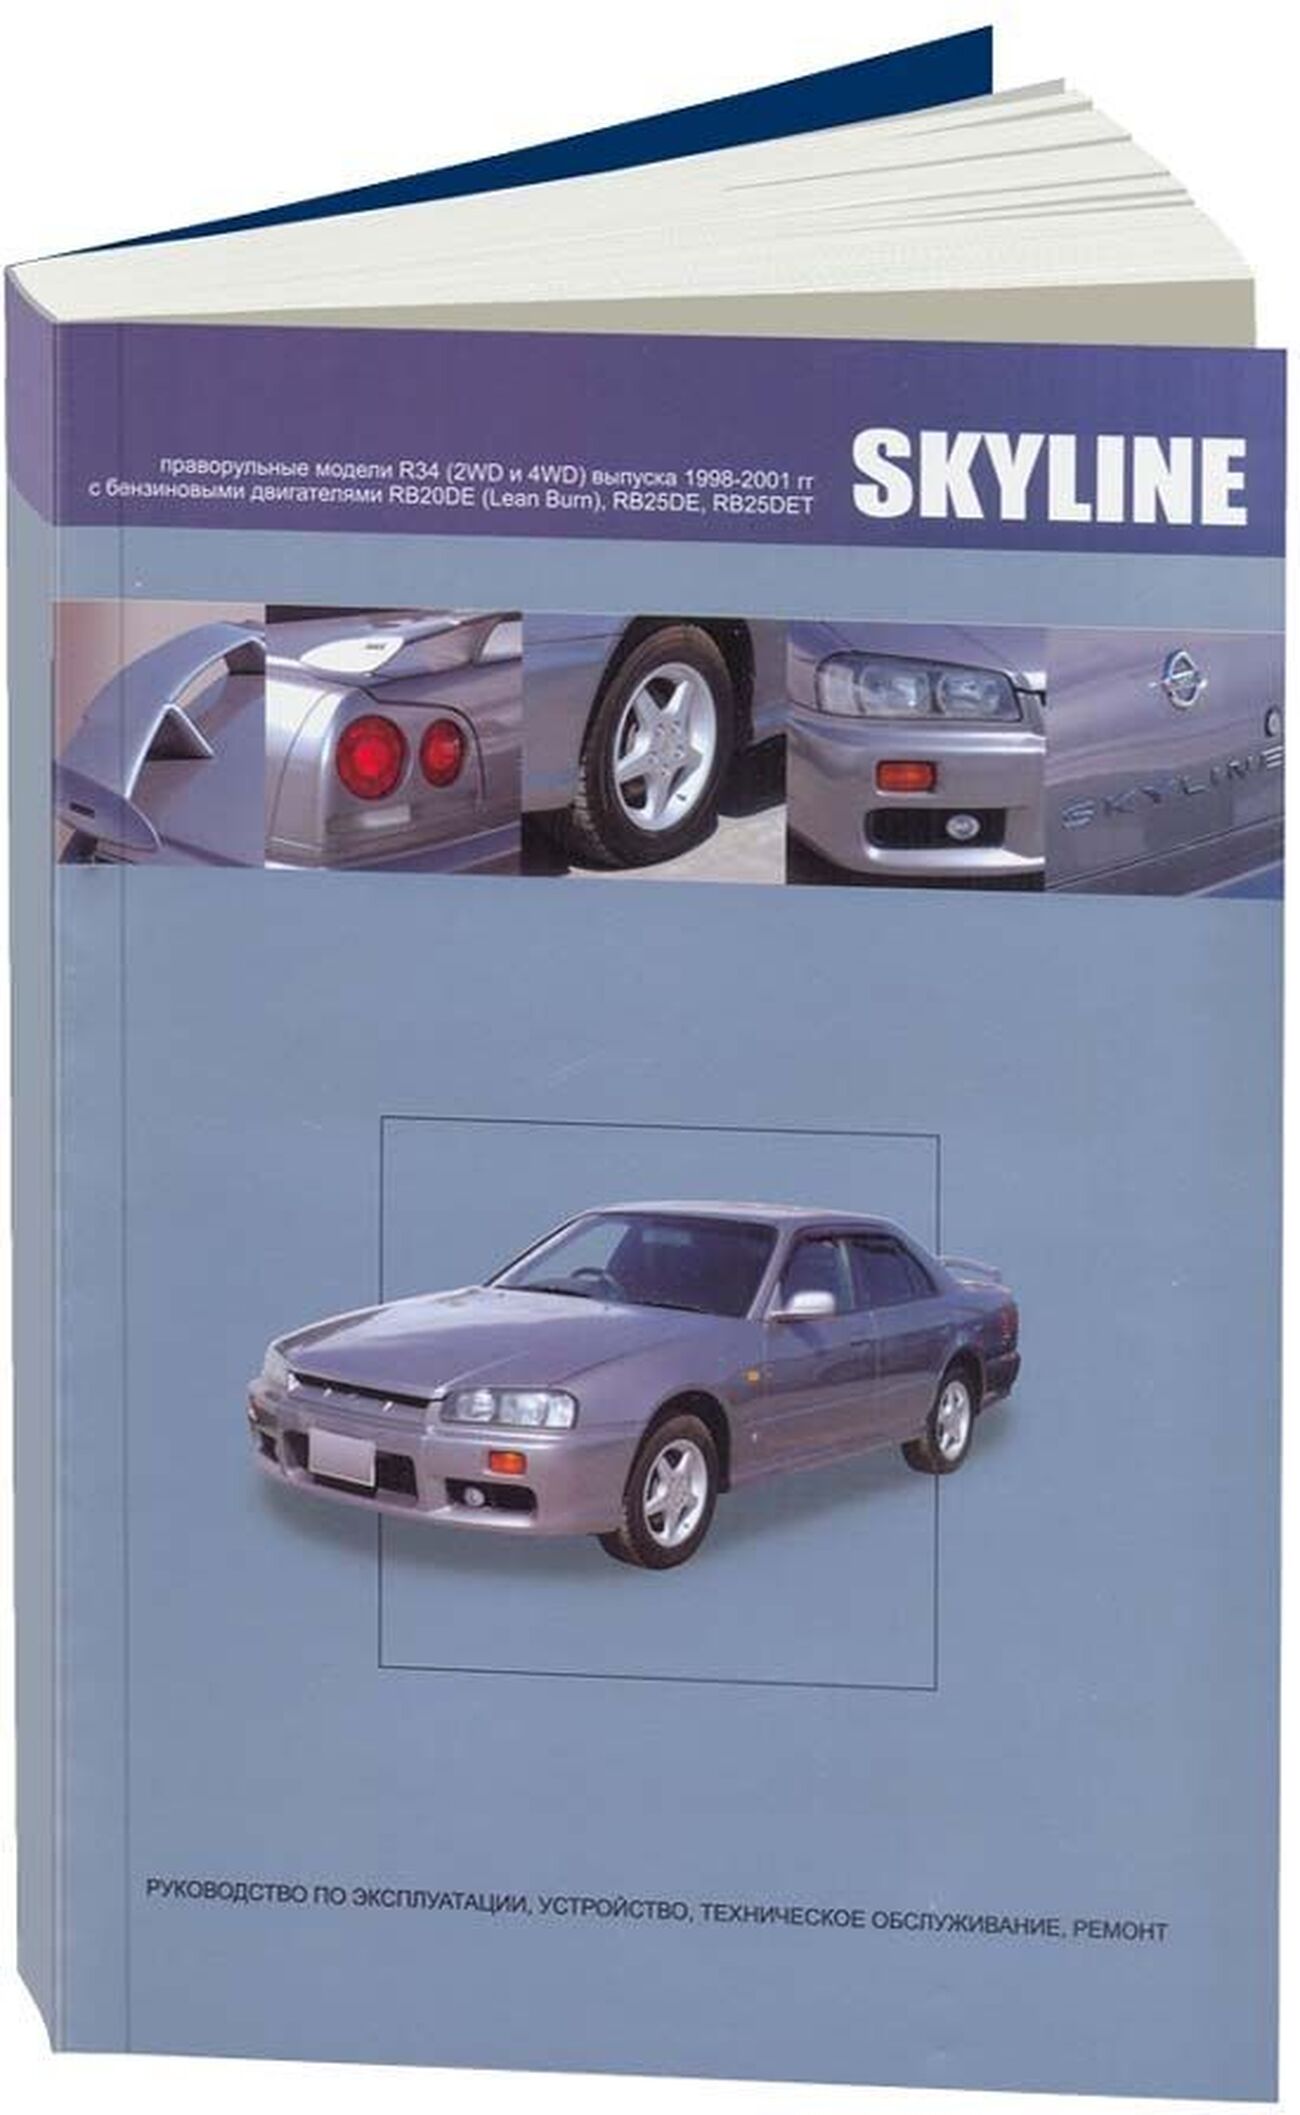 Книга: NISSAN SKYLINE R34 (б) 1998-2001 г.в., рем., экспл., то | Автонавигатор